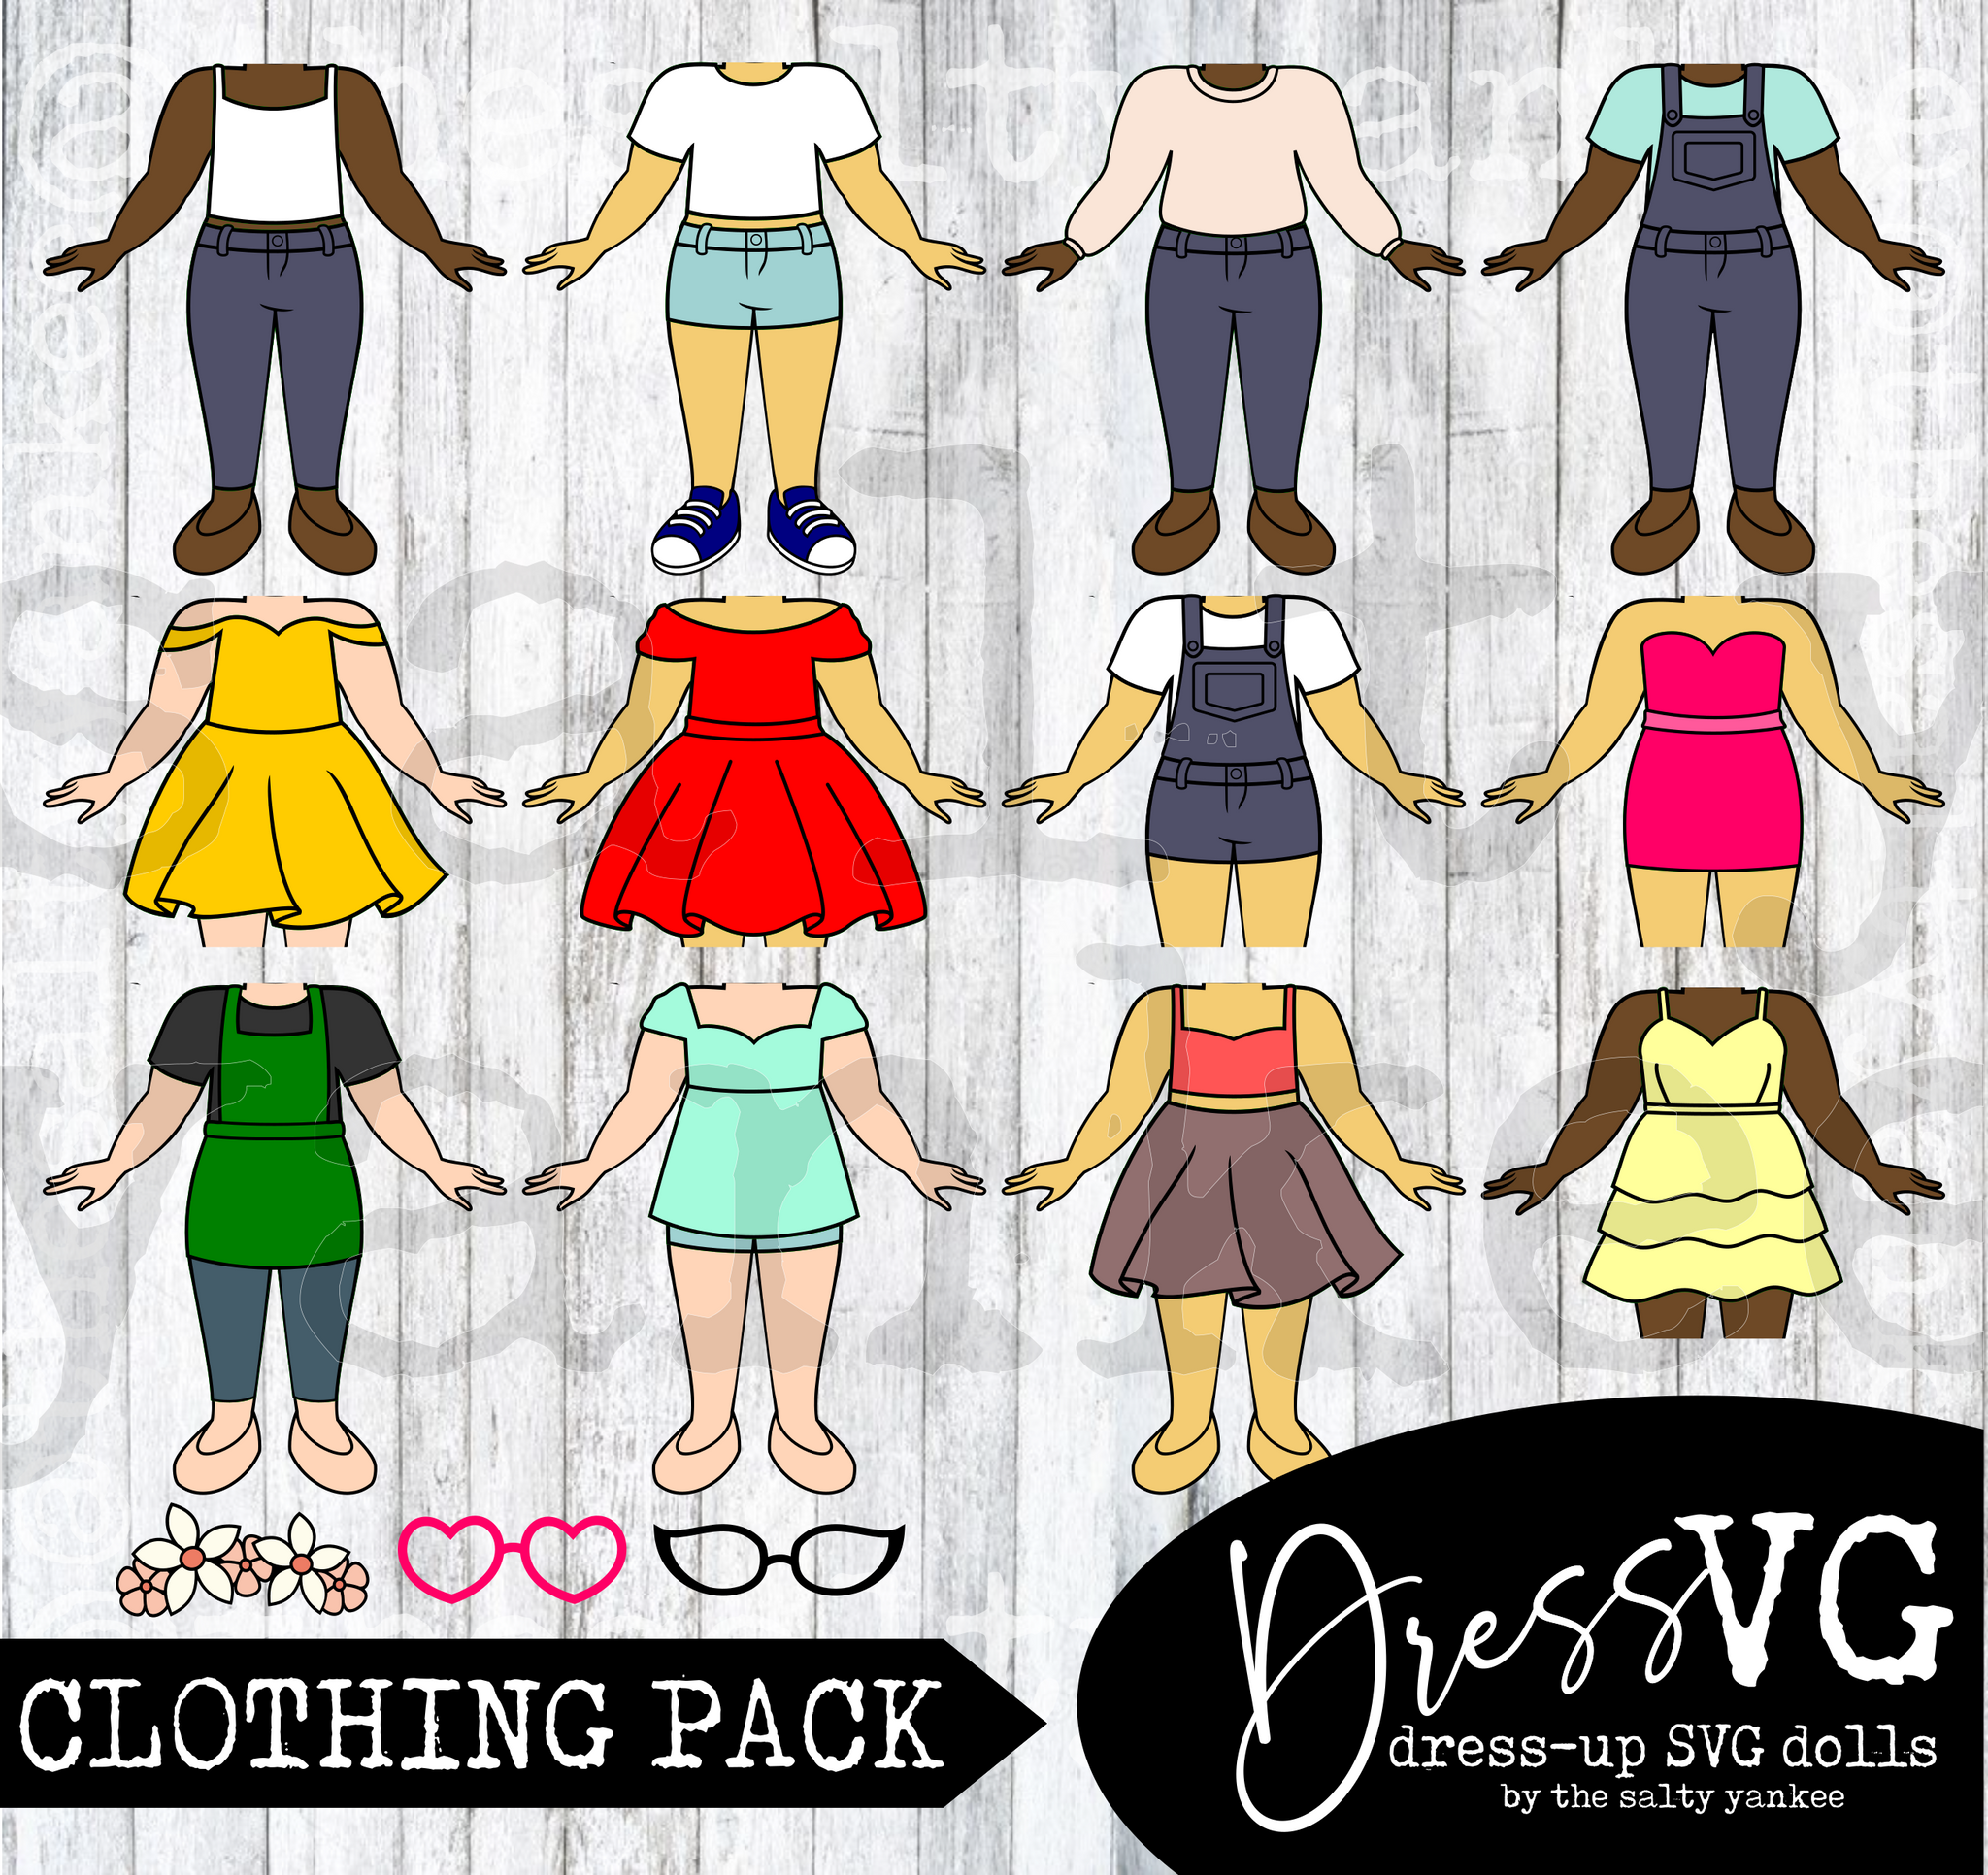 DressVG Clothing Pack - Casual Starter Pack -  SVG File Download